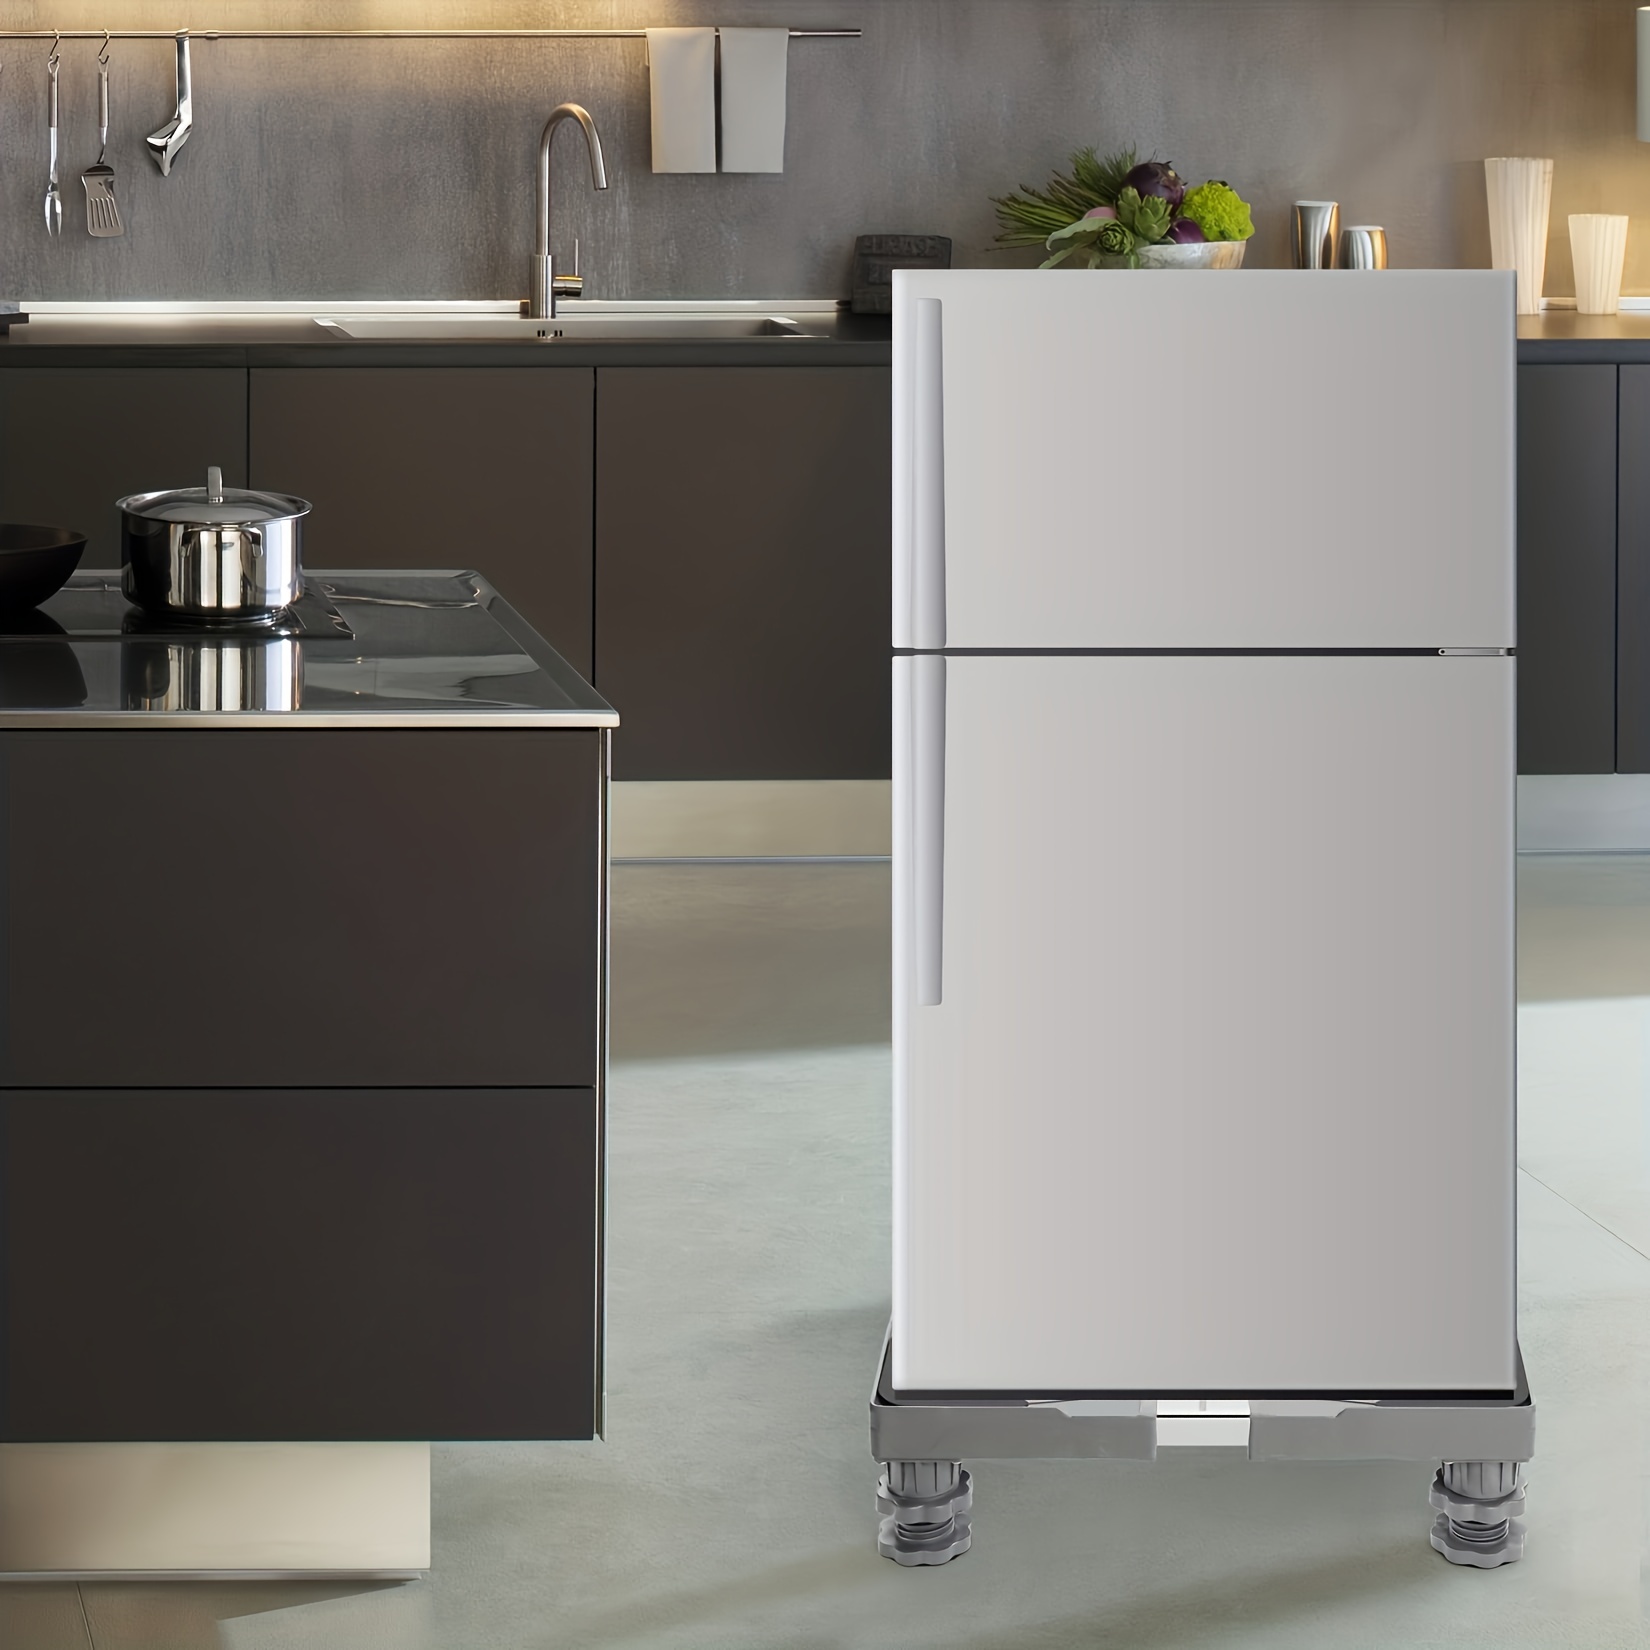 pedestal para lavadora y secadora refrigerador base movil movible soporte  ruedas